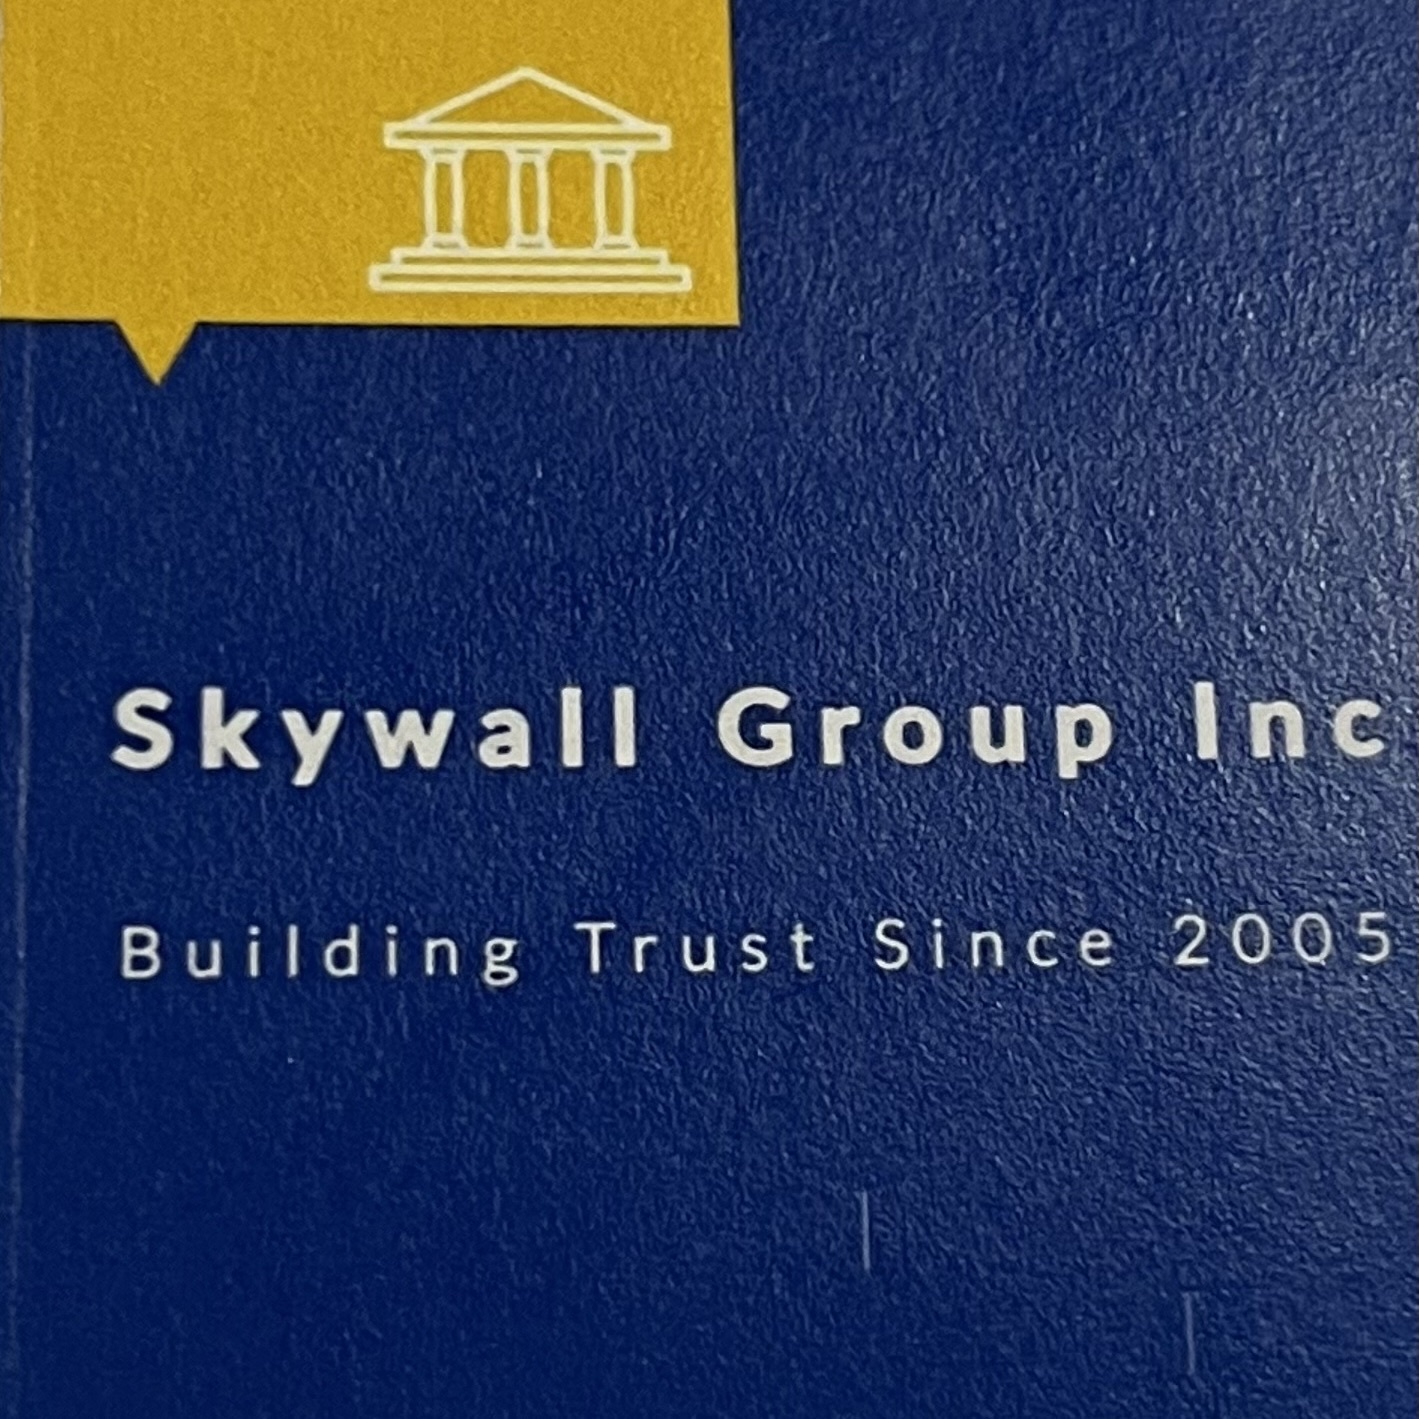 Skywall Group Inc's logo